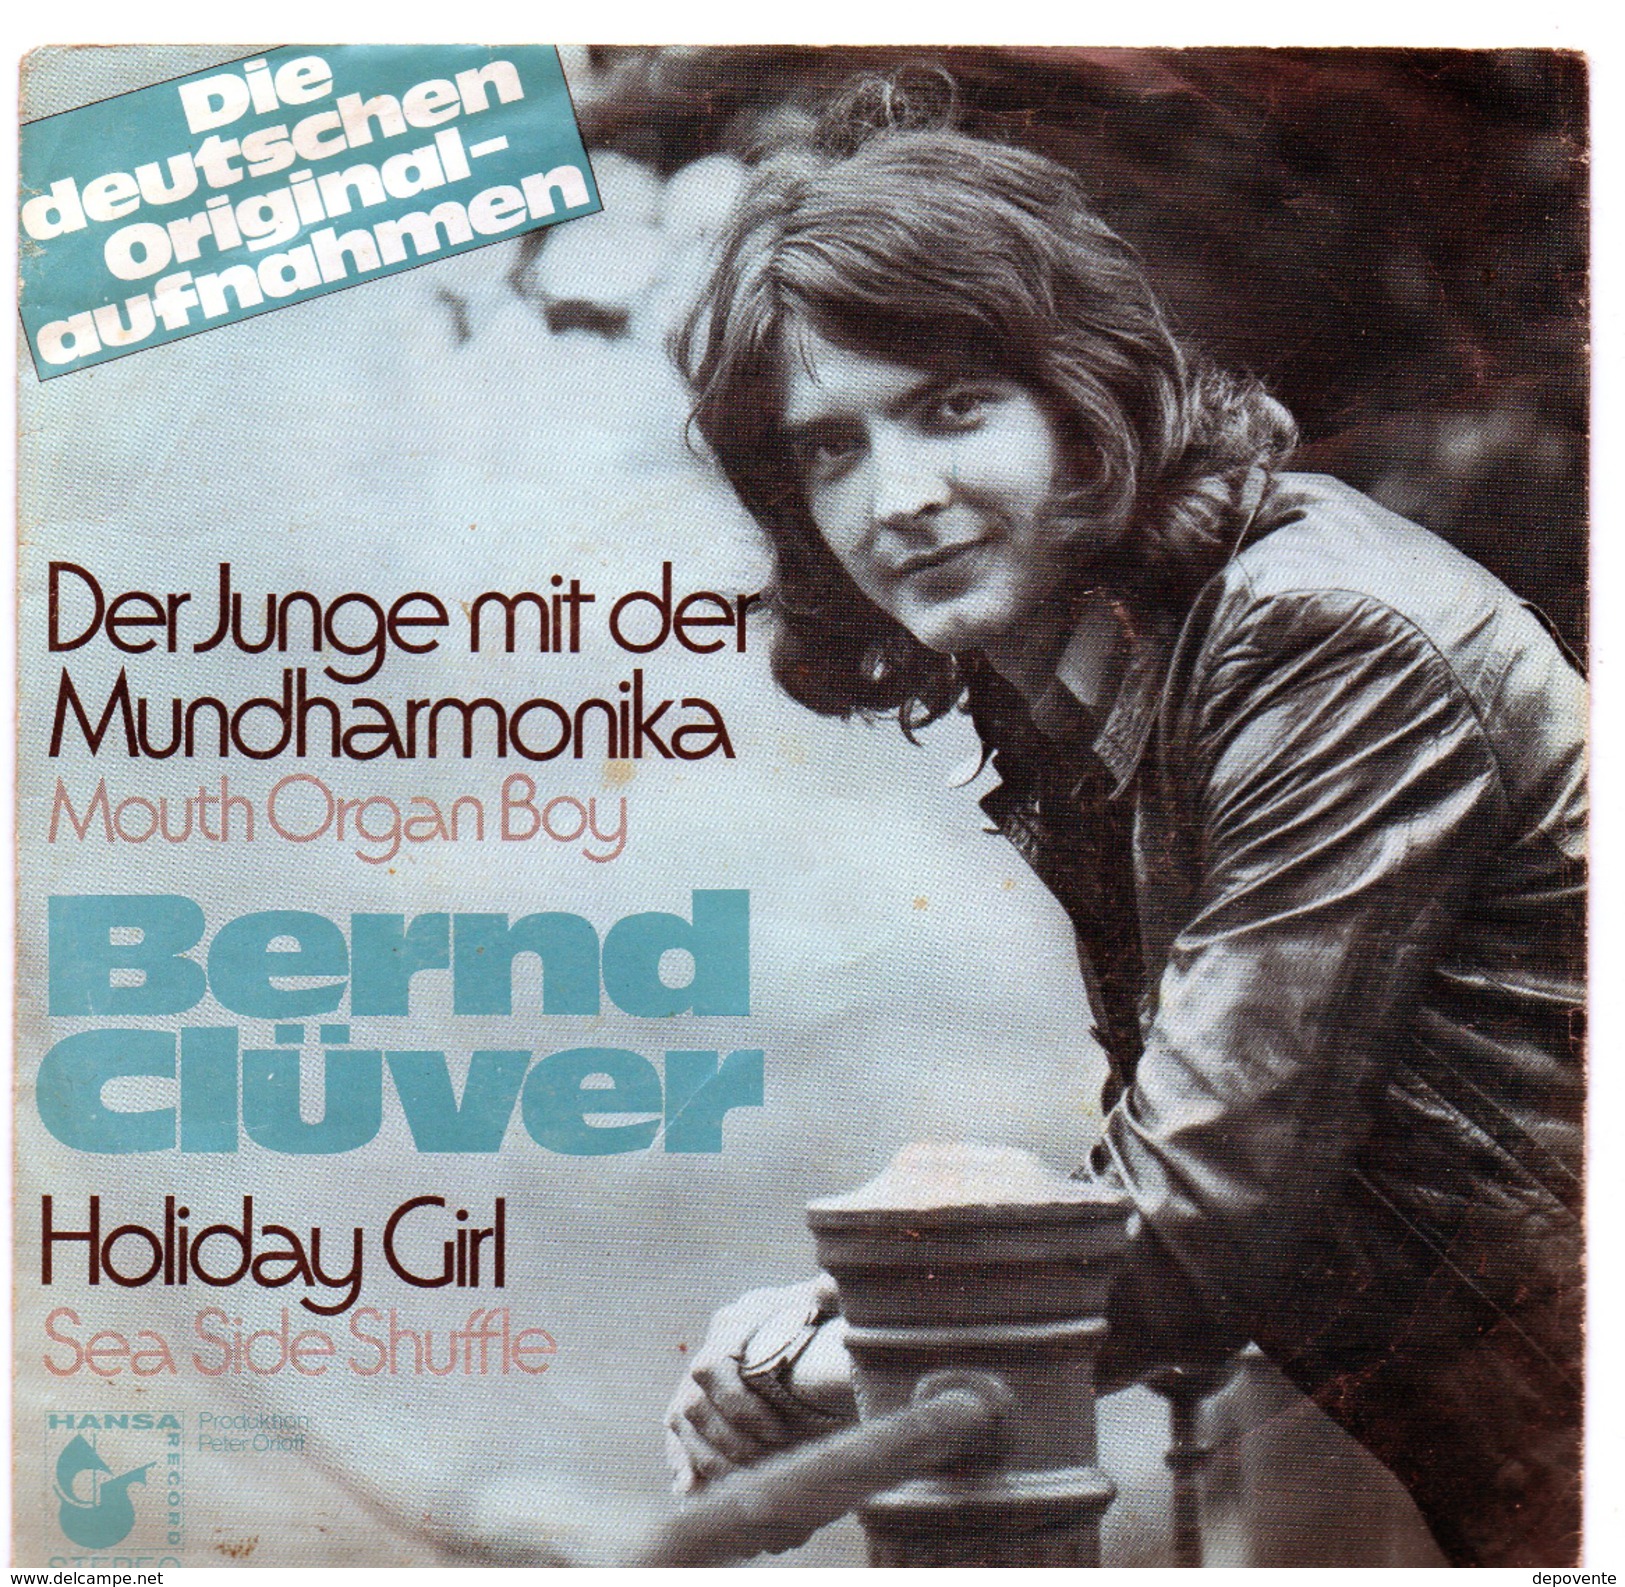 45T : BERND CLÜVER - DER JUNGE MIT DER MUNDHARMONICA - Sonstige - Deutsche Musik